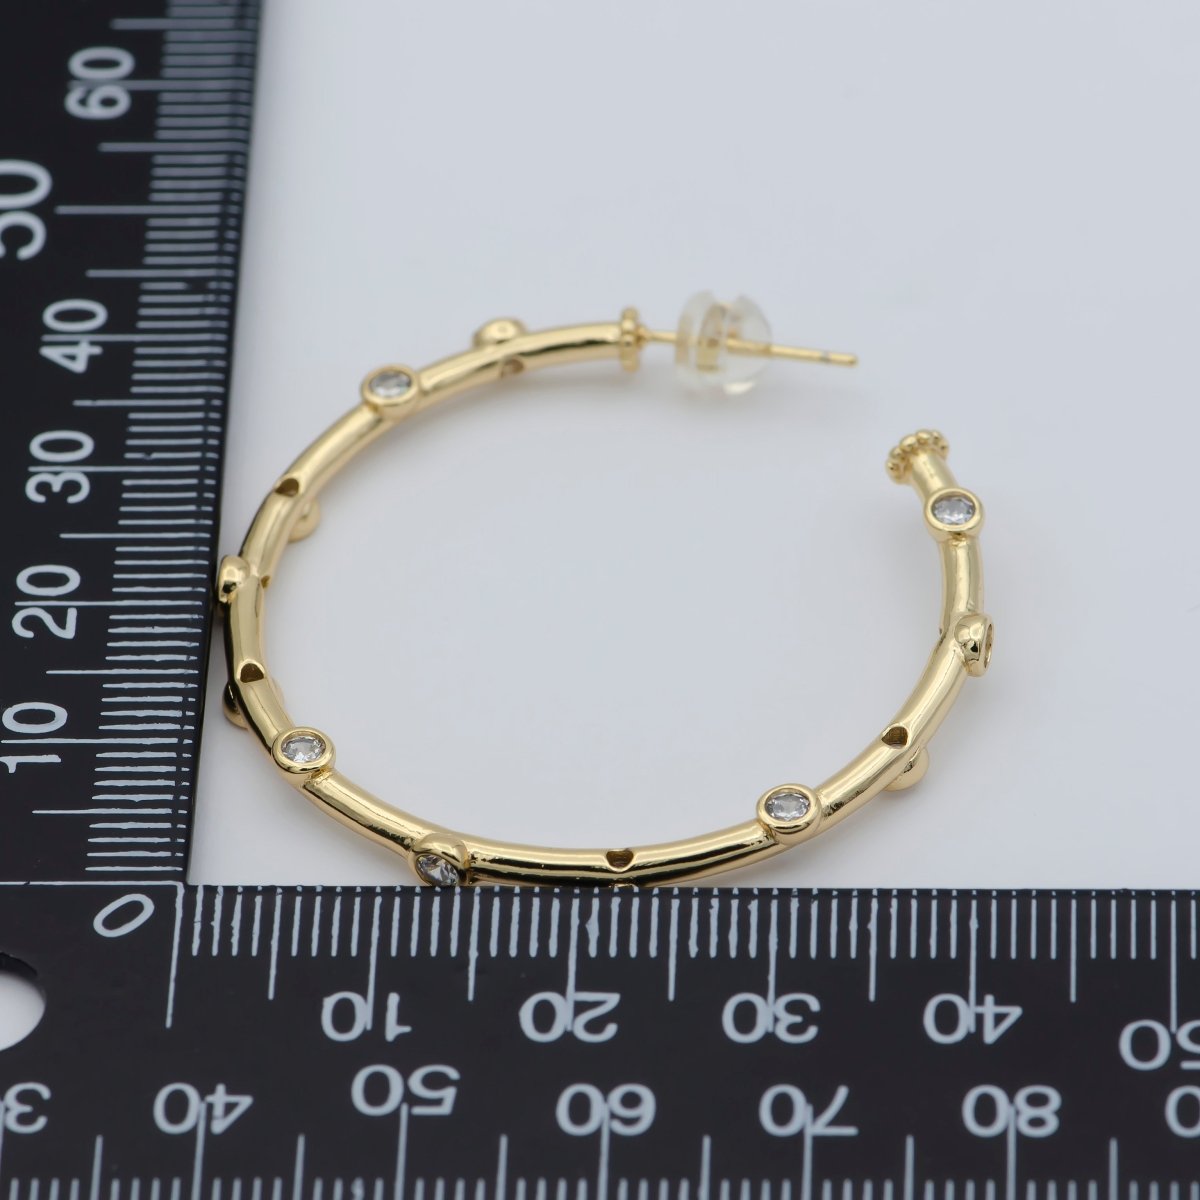 Zirconia hoop earring - Cz hoop - -Hypoallergenic earring -Dainty earring - Minimalist jewelry- Delicate earring P-260 P-261 P-262 - DLUXCA